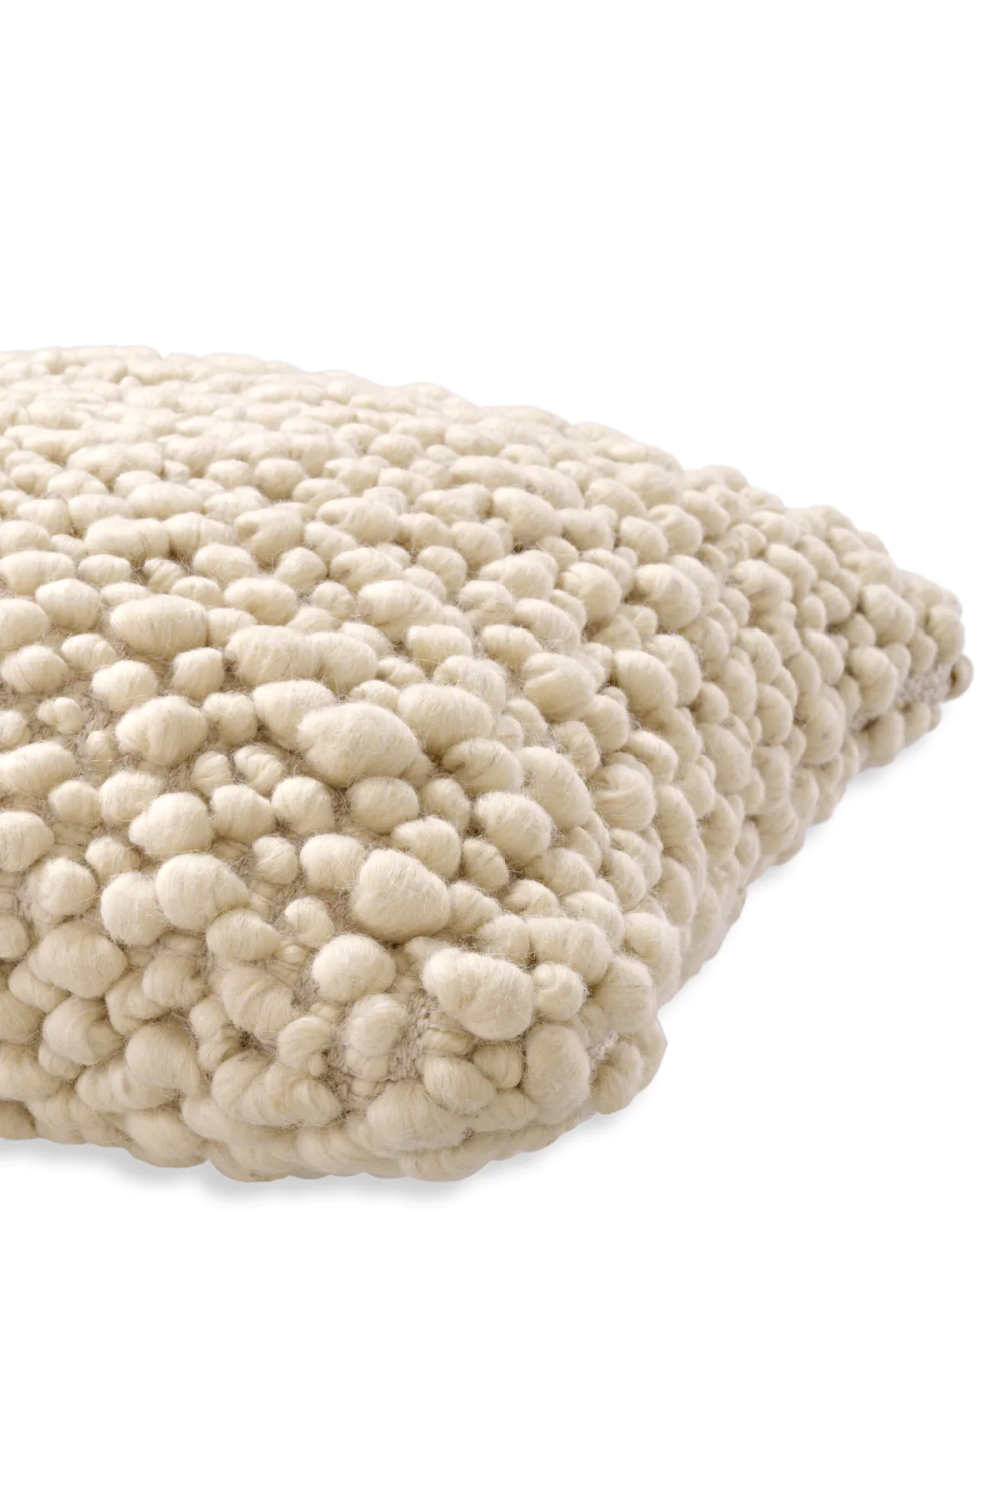 White Wool Cushion | Eichholtz Schillinger | Oroa.com